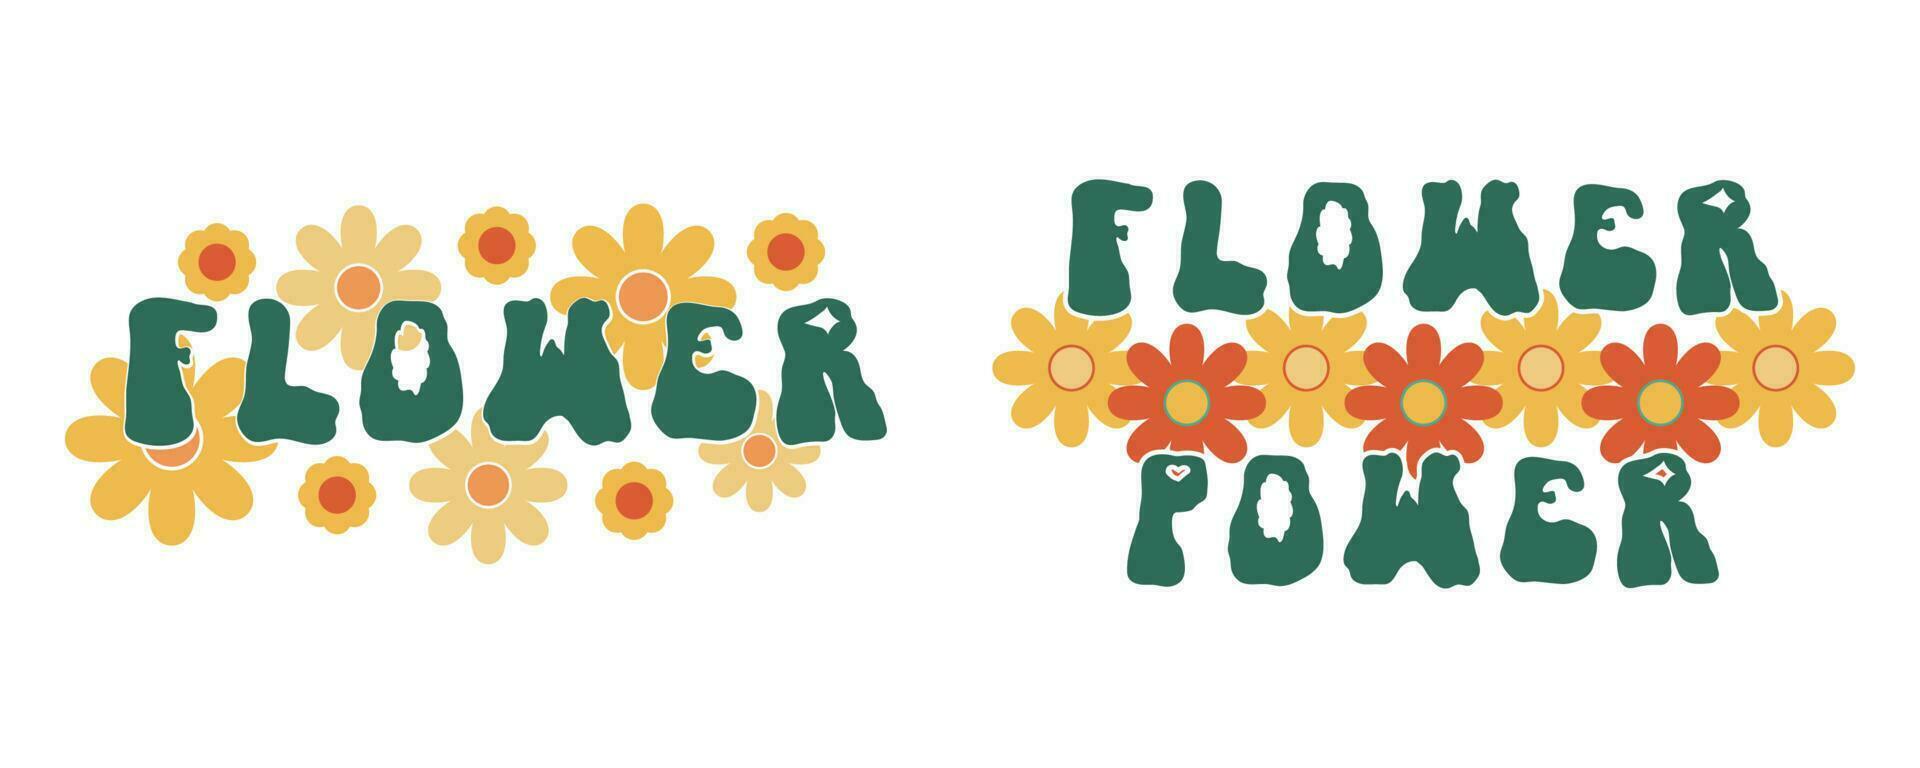 blomma kraft flicka daisy häftig skriva ut hippie uppsättning. psychedelic retro mode skjorta slogan. boho tshirt text med blommig text illustration isolerat på vit bakgrund. 60s positiv fras typ vektor